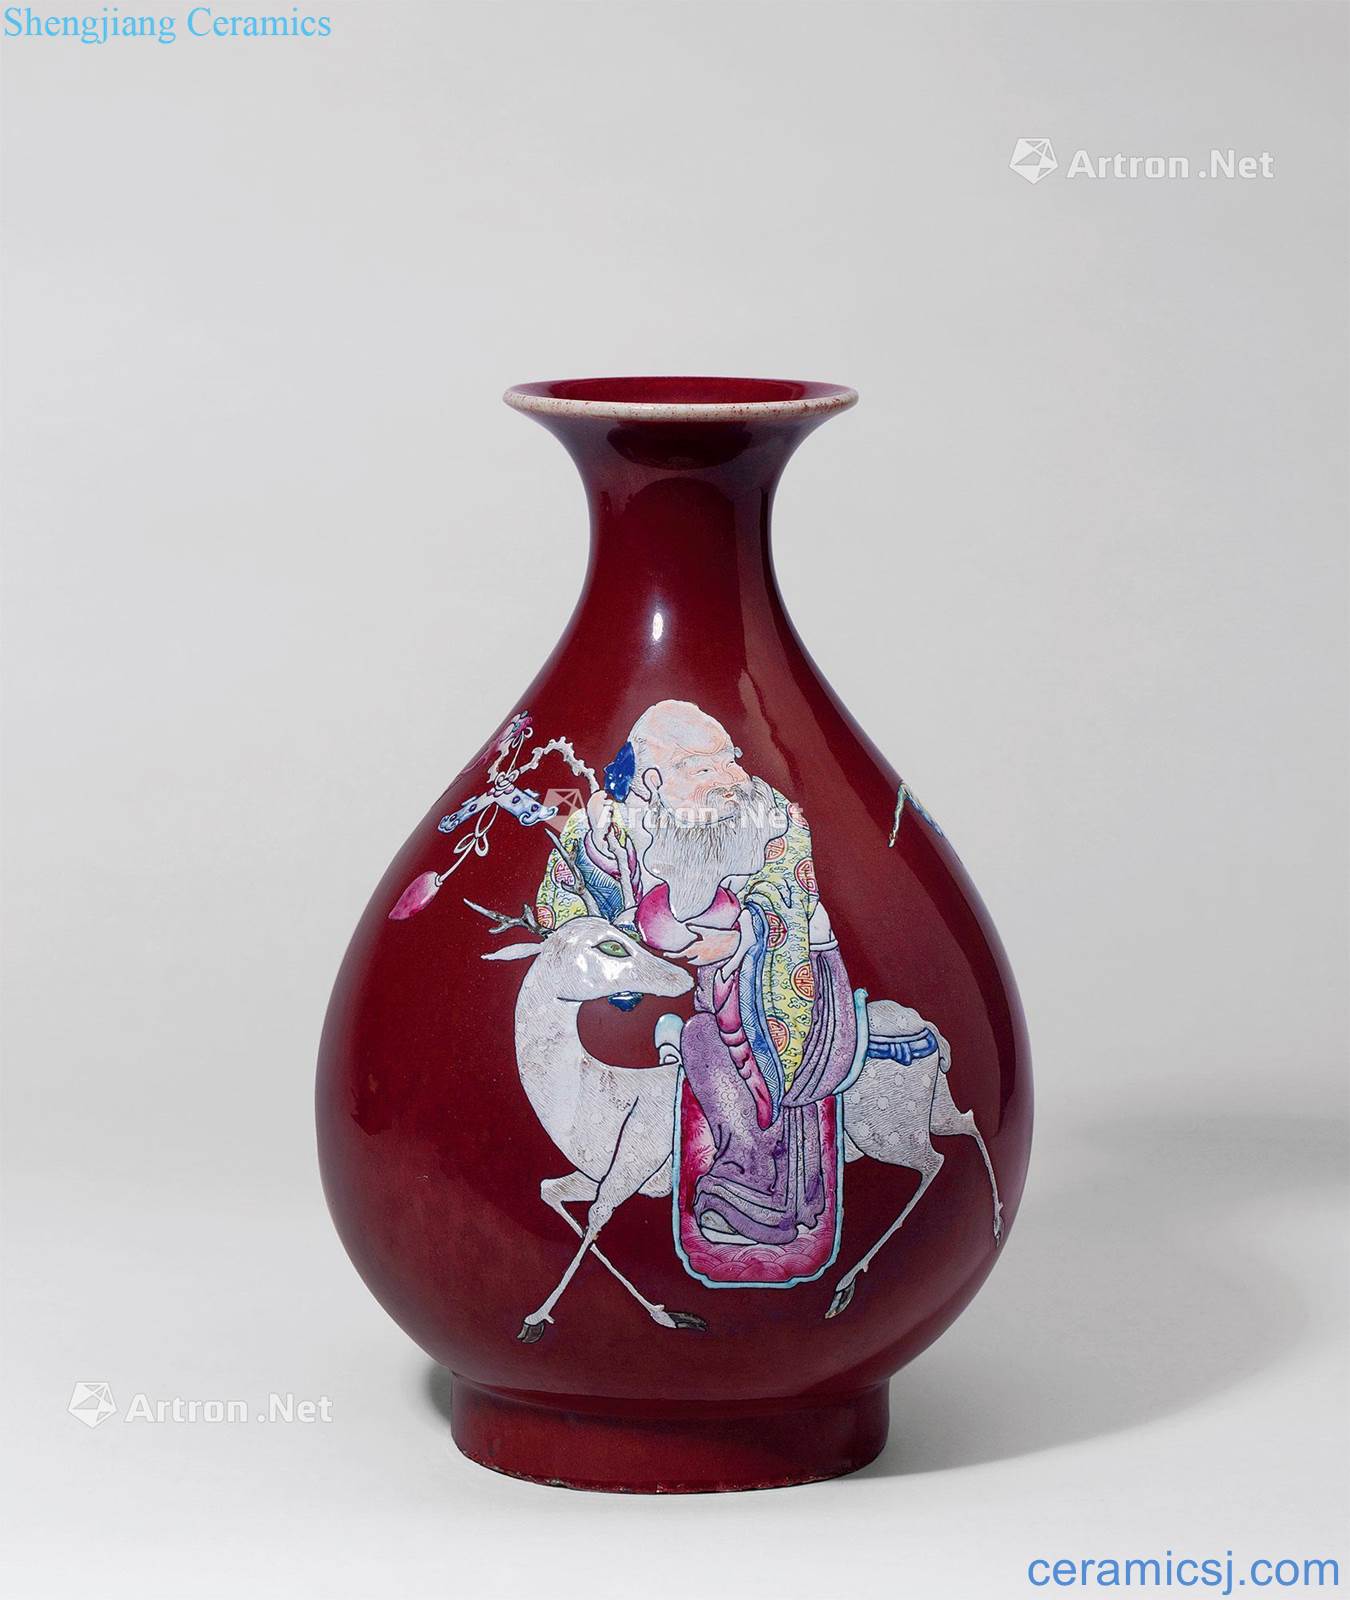 Qing guangxu The red glaze enamel "fu lu shou" grain okho spring bottle